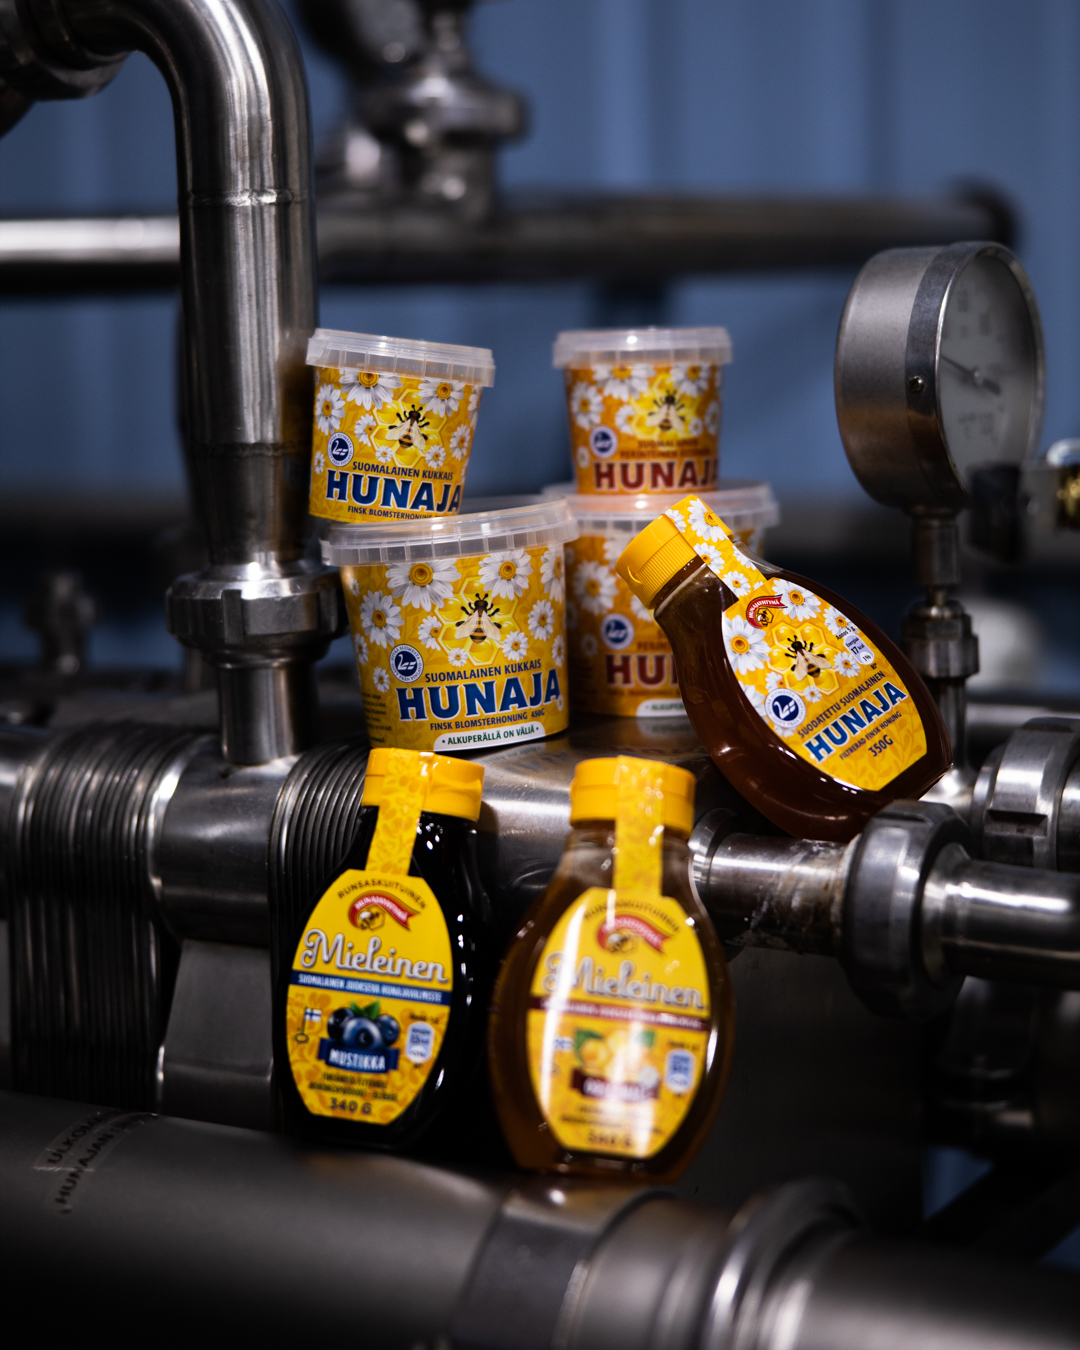 Aidon ja alkuperältään tunnistettavan kotimaisen hunajan laadukkuuteen kuuluu kuluttajia palveleva pakkauksen tuoteseloste.